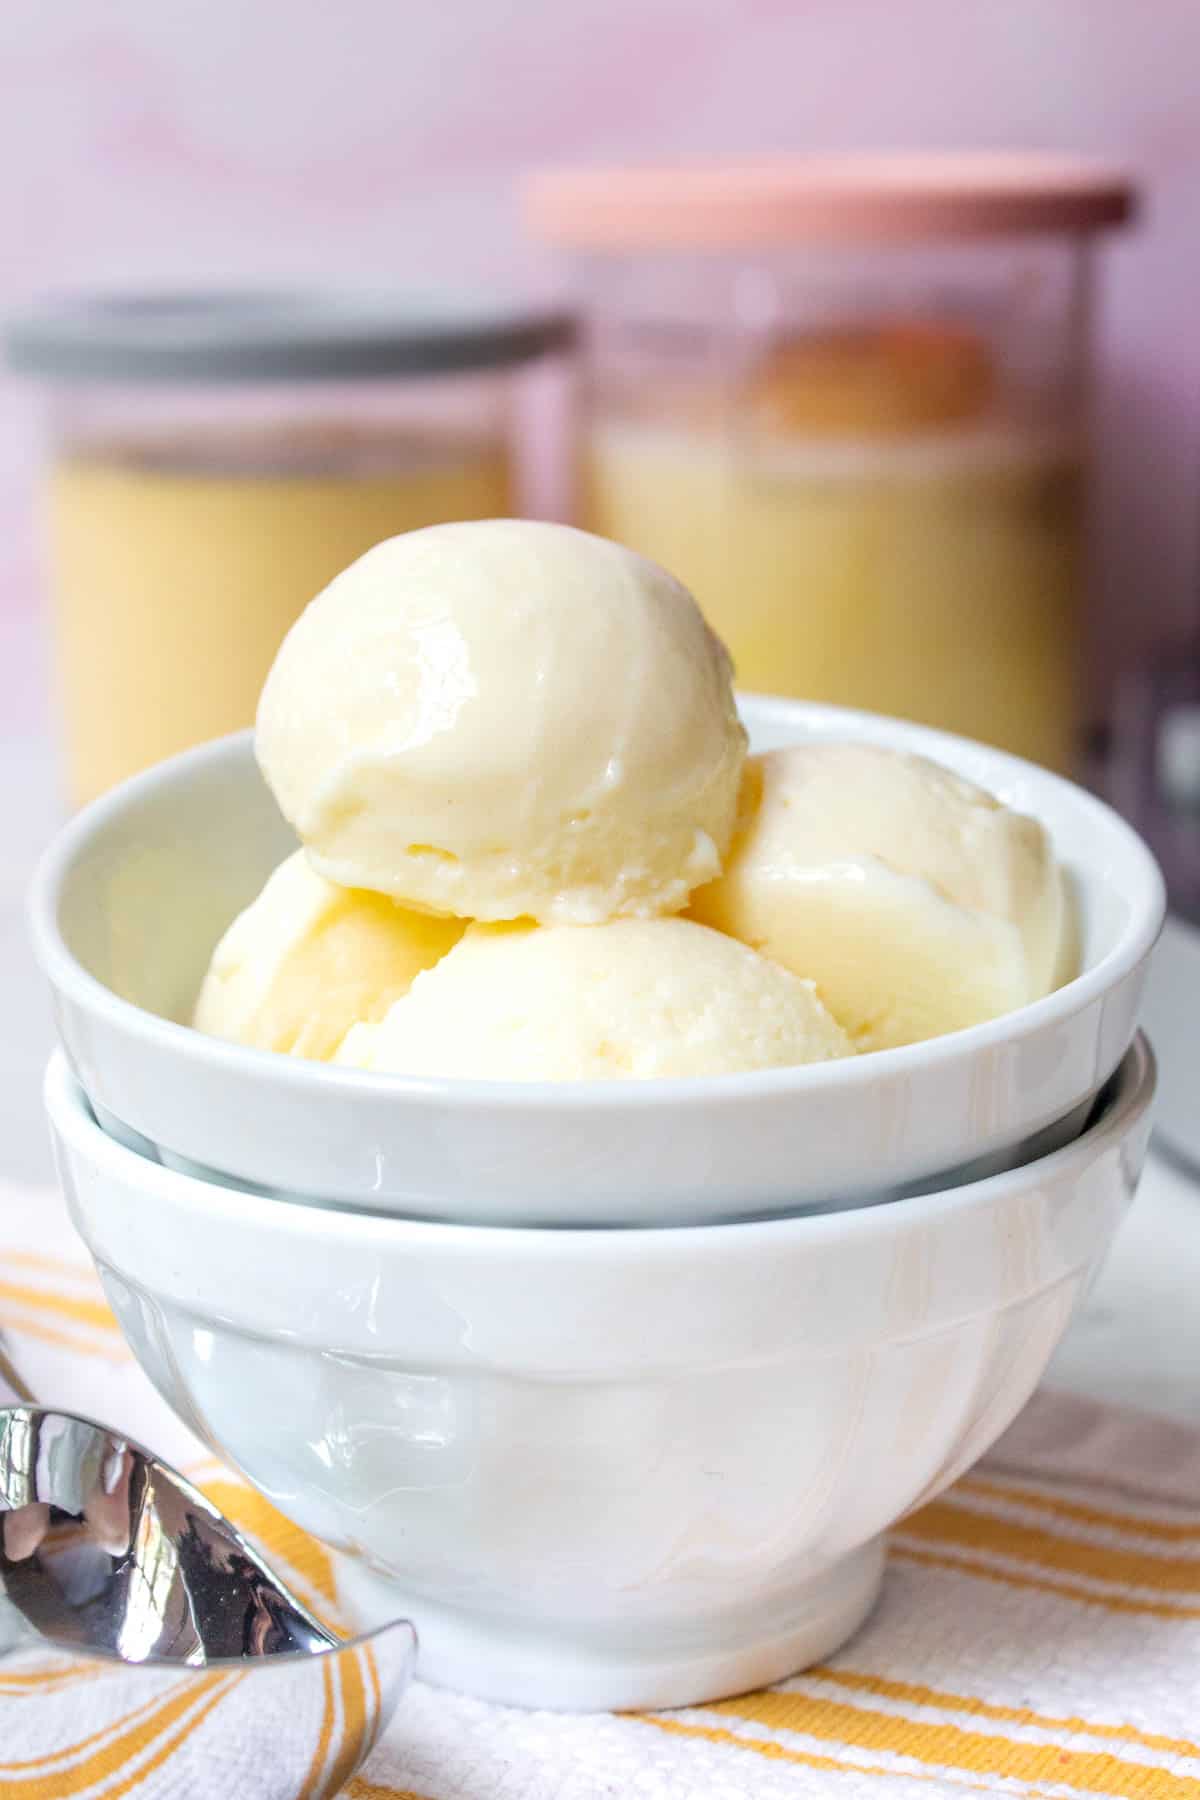 Ninja Creami Vanilla Protein Ice Cream